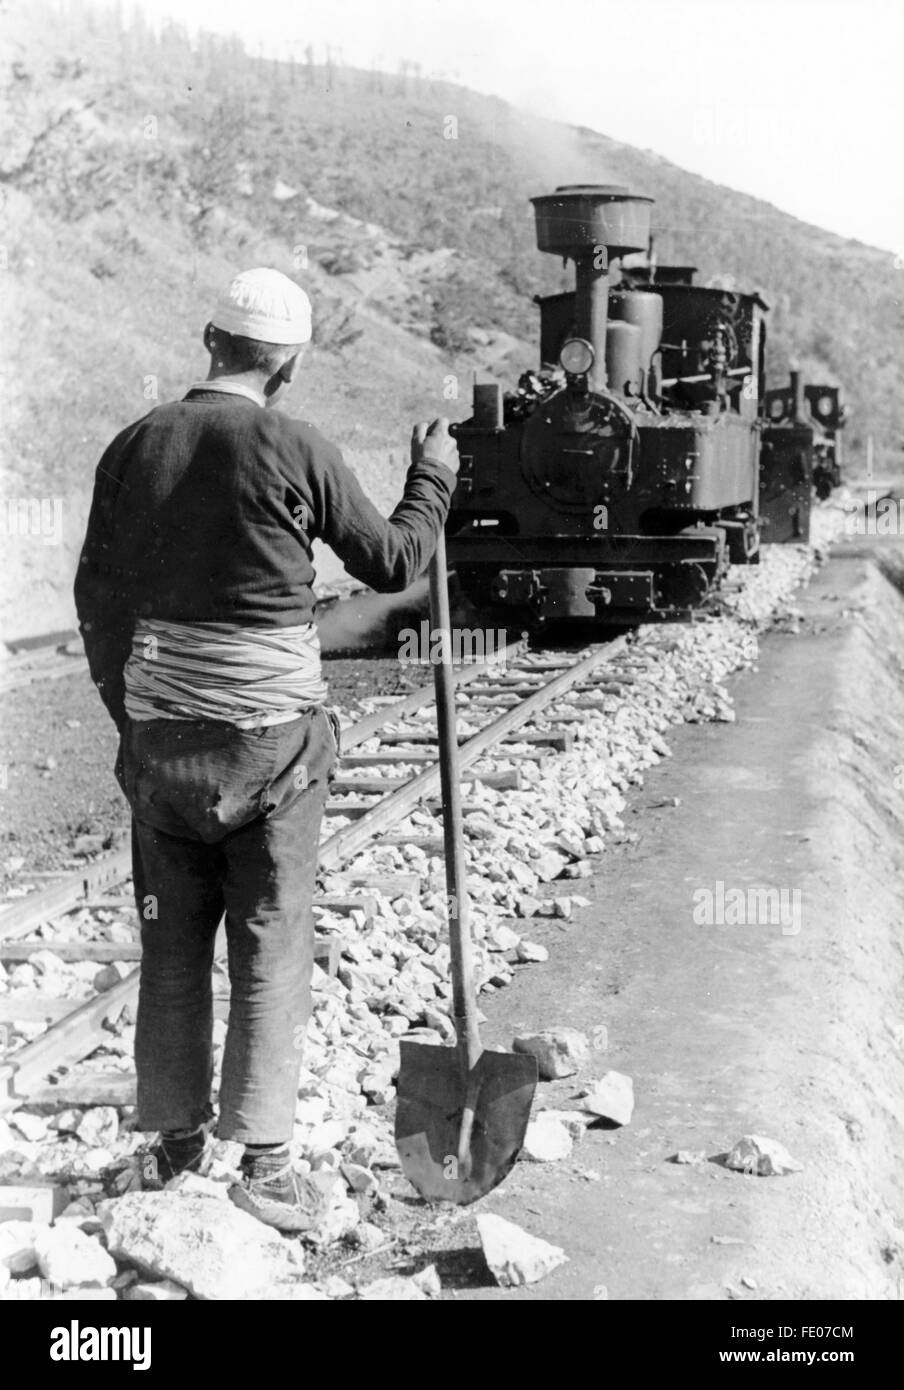 La foto della propaganda nazista mostra un lavoratore forzato su un binario ferroviario, costruito dall'Organizzazione Todt sul fronte dell'Europa sudorientale. La foto è stata scattata nel giugno 1943. Fotoarchiv für Zeitgeschichtee - SENZA FILI - Foto Stock